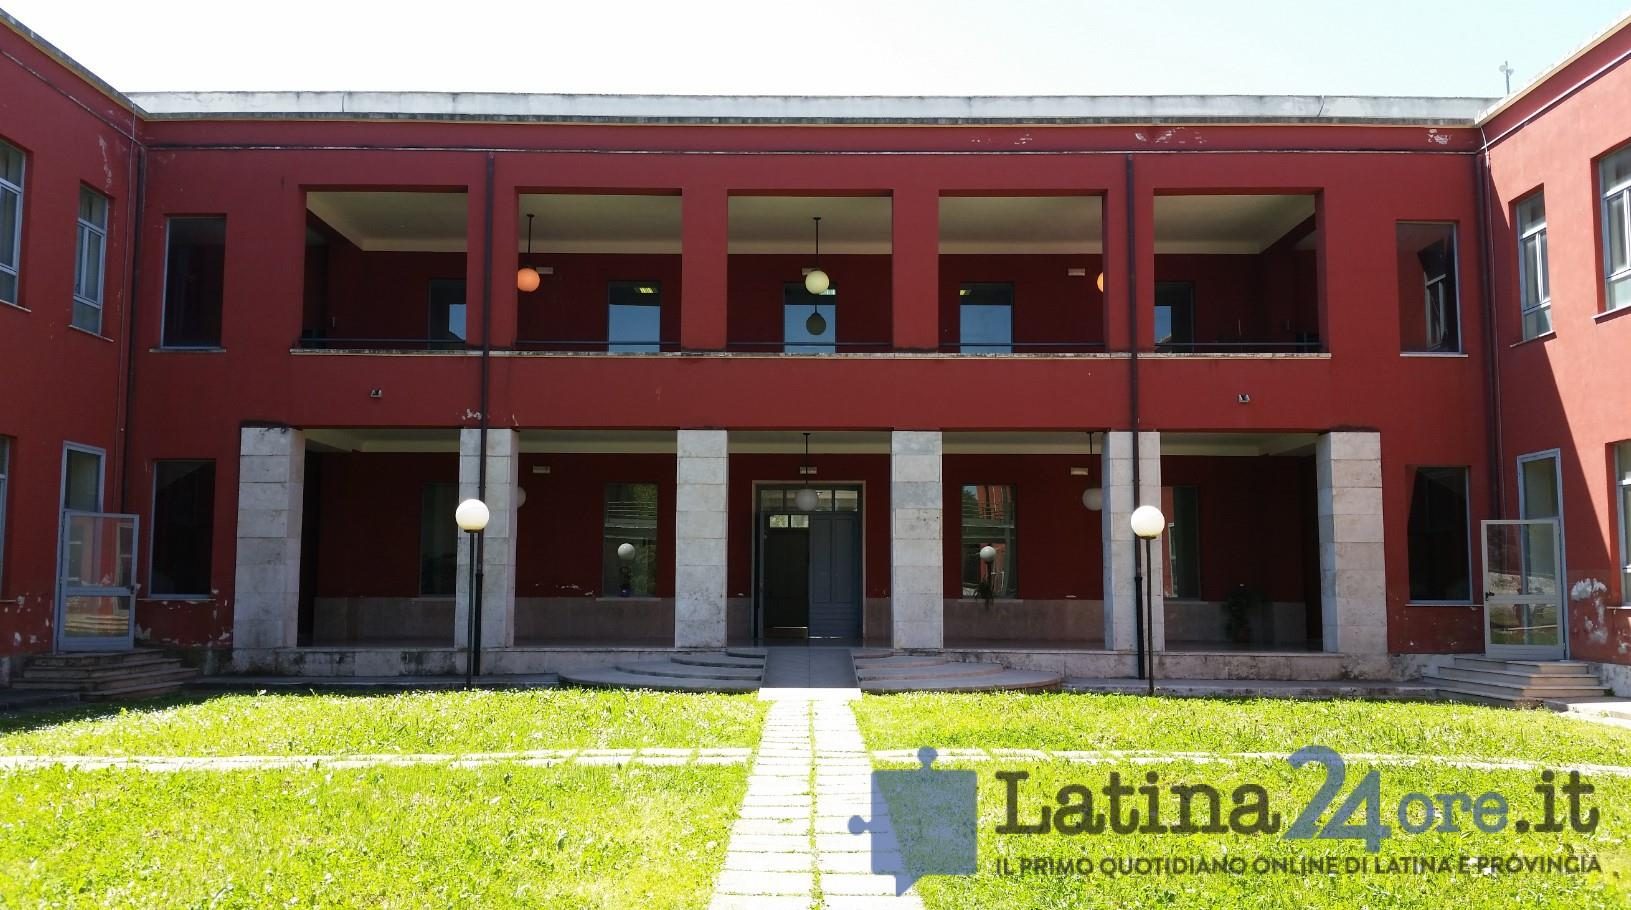 Accordo raggiunto: l ex 82 diventerà il nuovo Campus universitario di Latina E stato formalizzato l accordo tra il direttore generale dell Agenzia del Demanio, Roberto Reggi e il Rettore dell